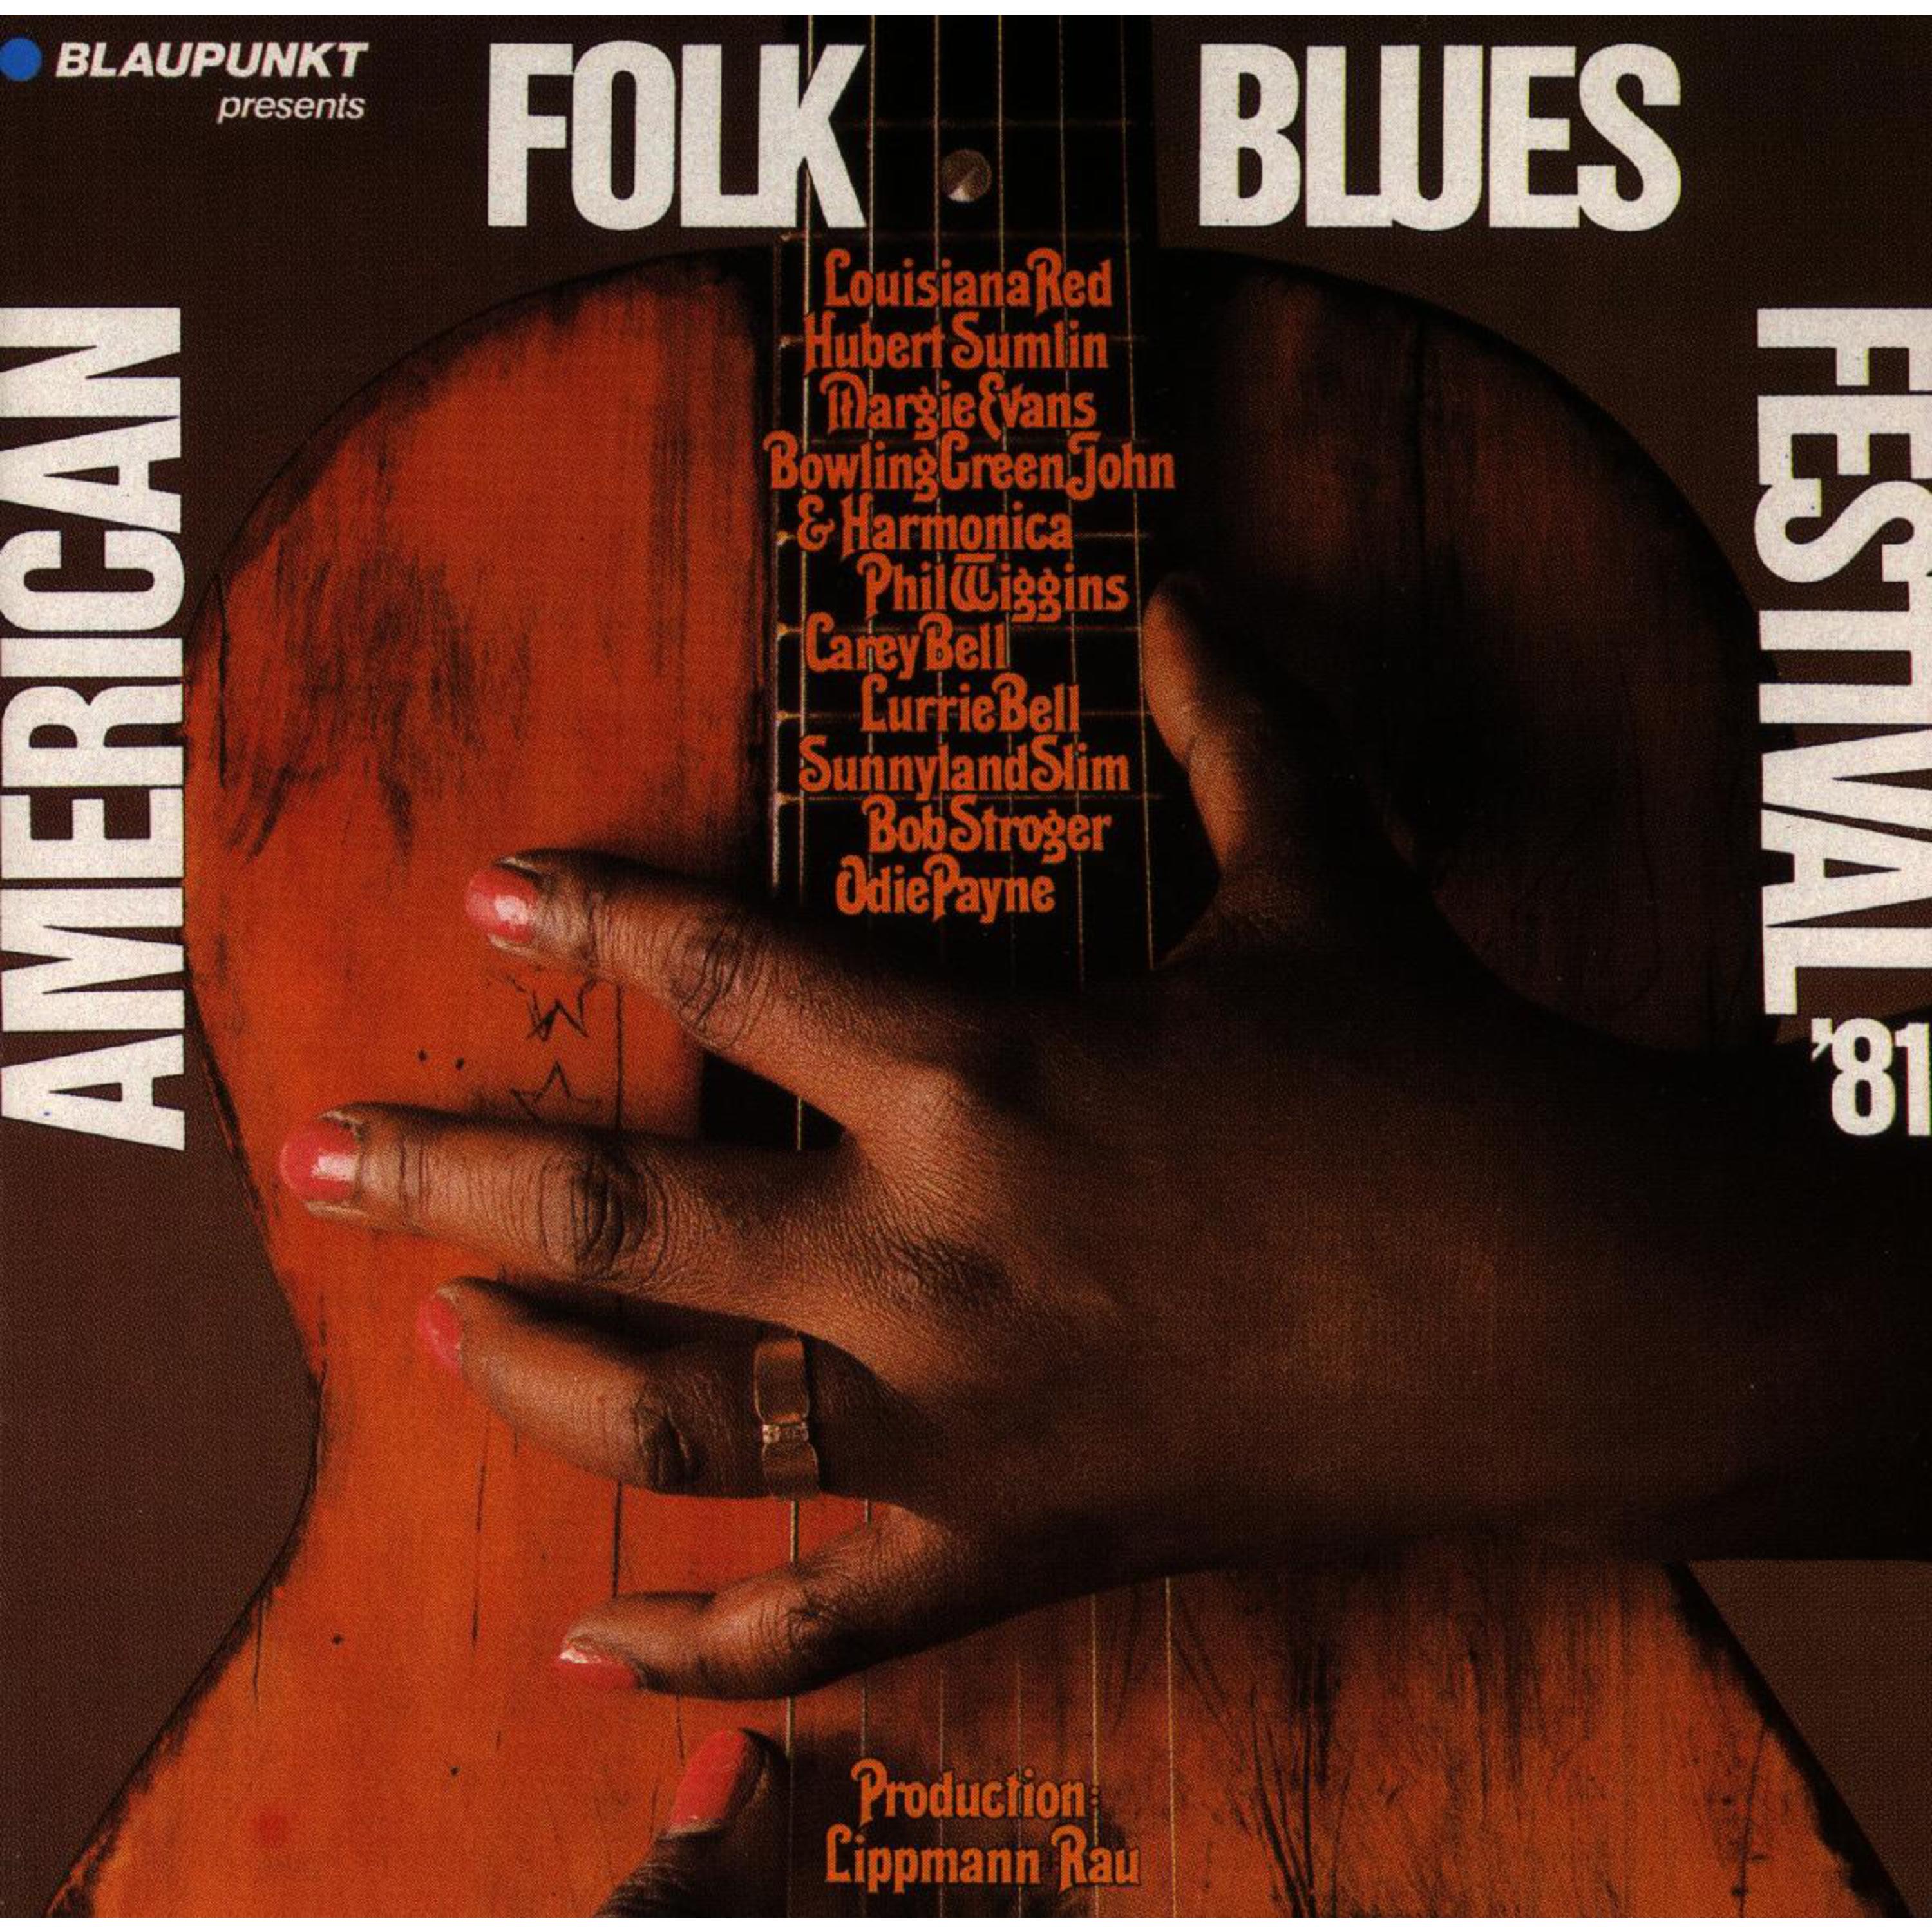 American Folk Blues Festival (81)